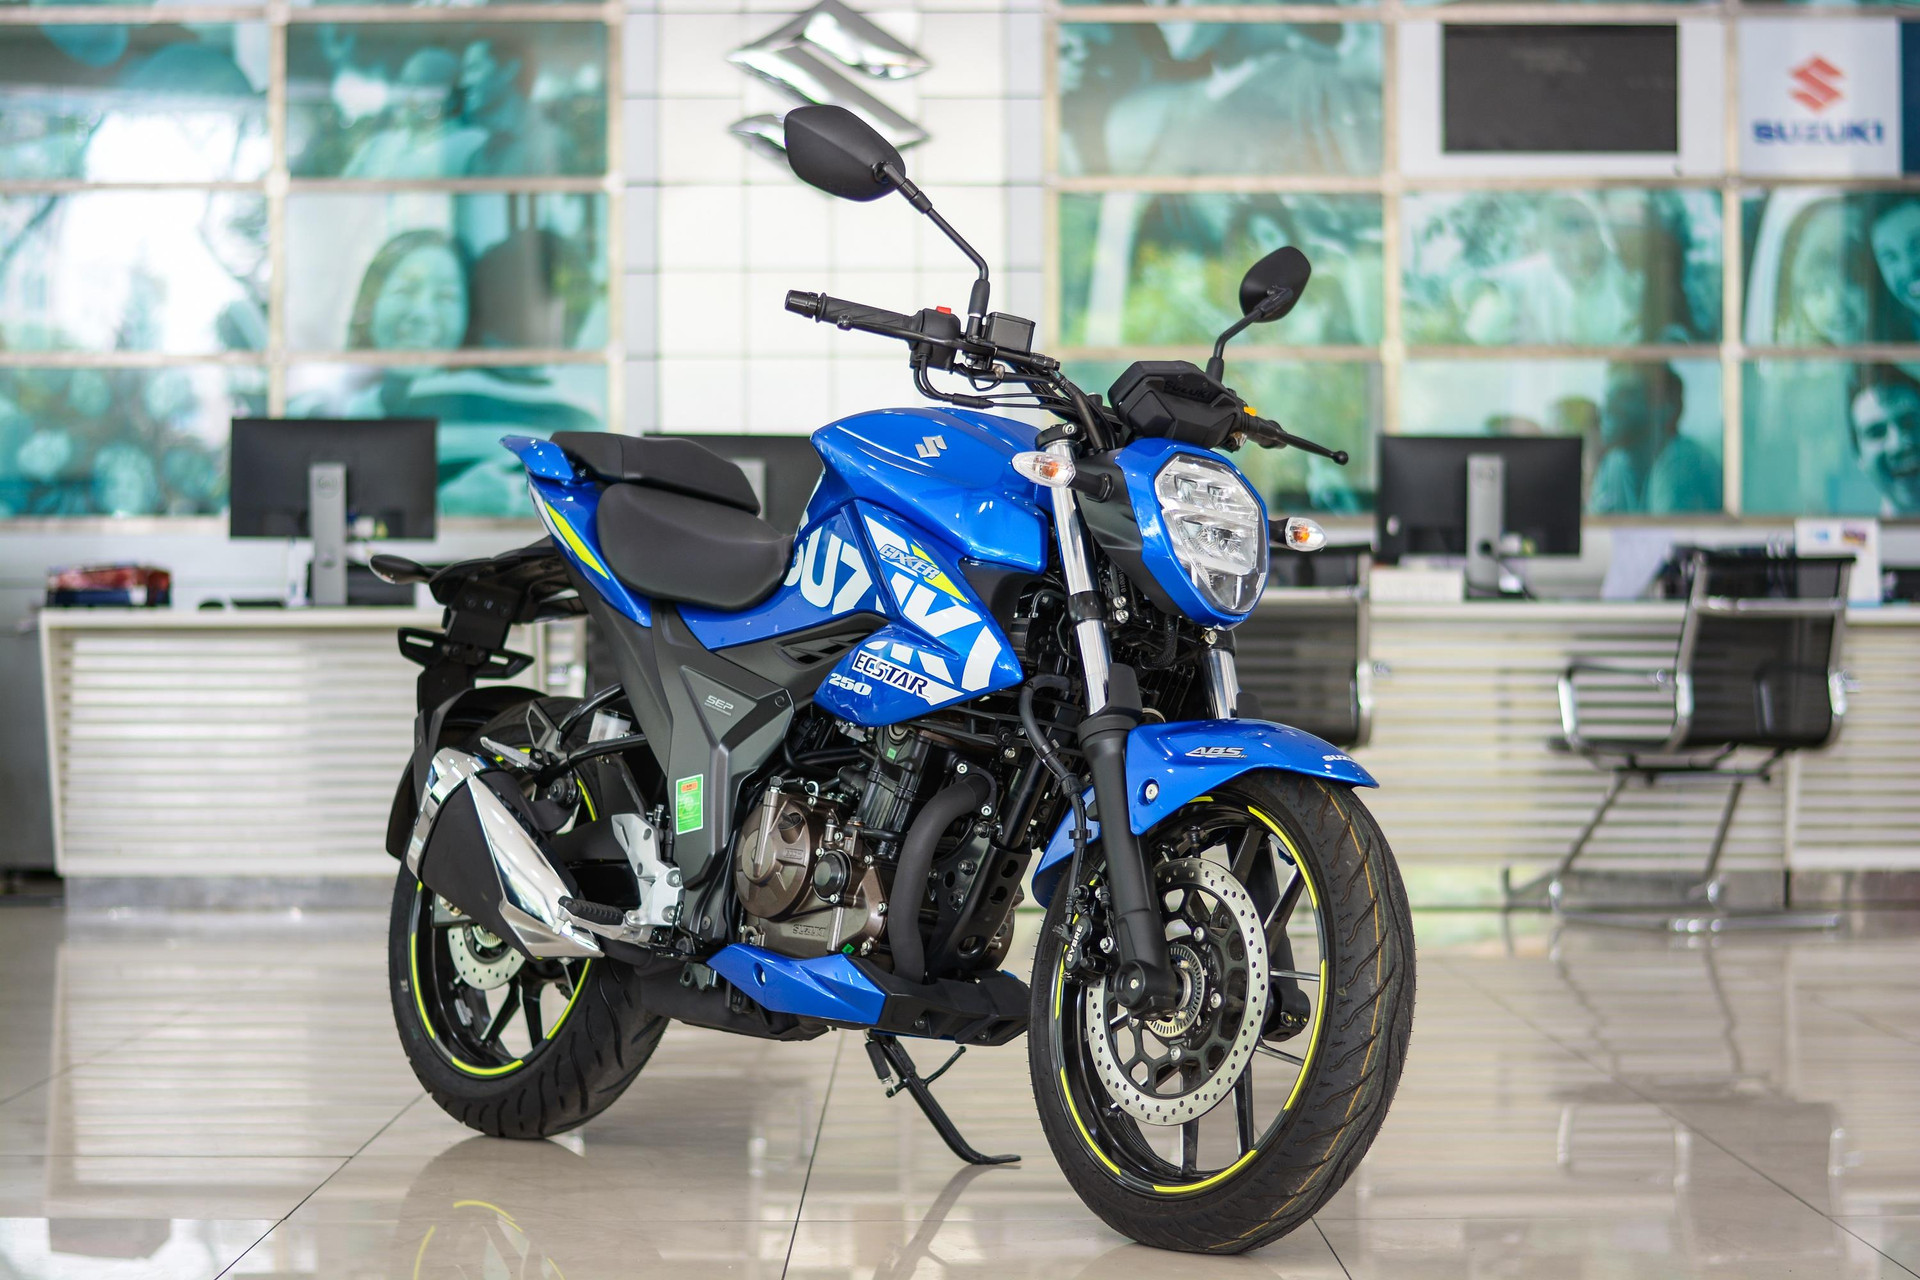 Chi tiết Suzuki Gixxer 250 giá 120,9 triệu đồng tại Việt Nam - 10